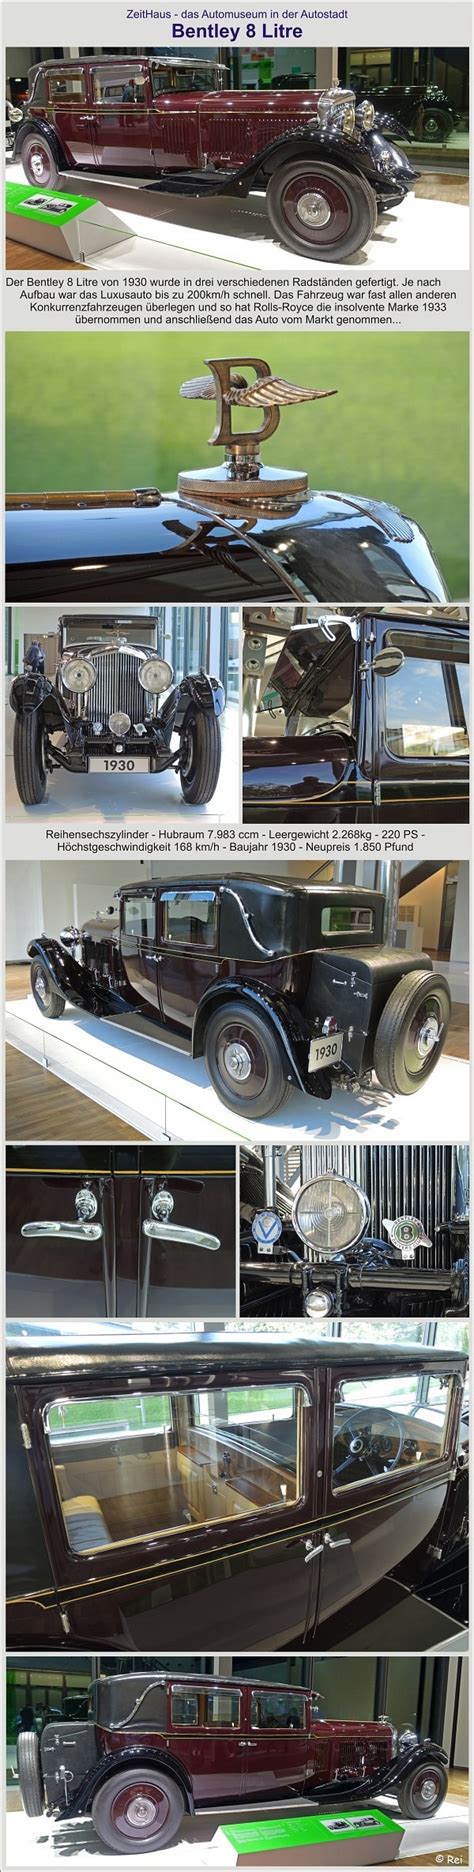 Bentley 8 Litre 1930